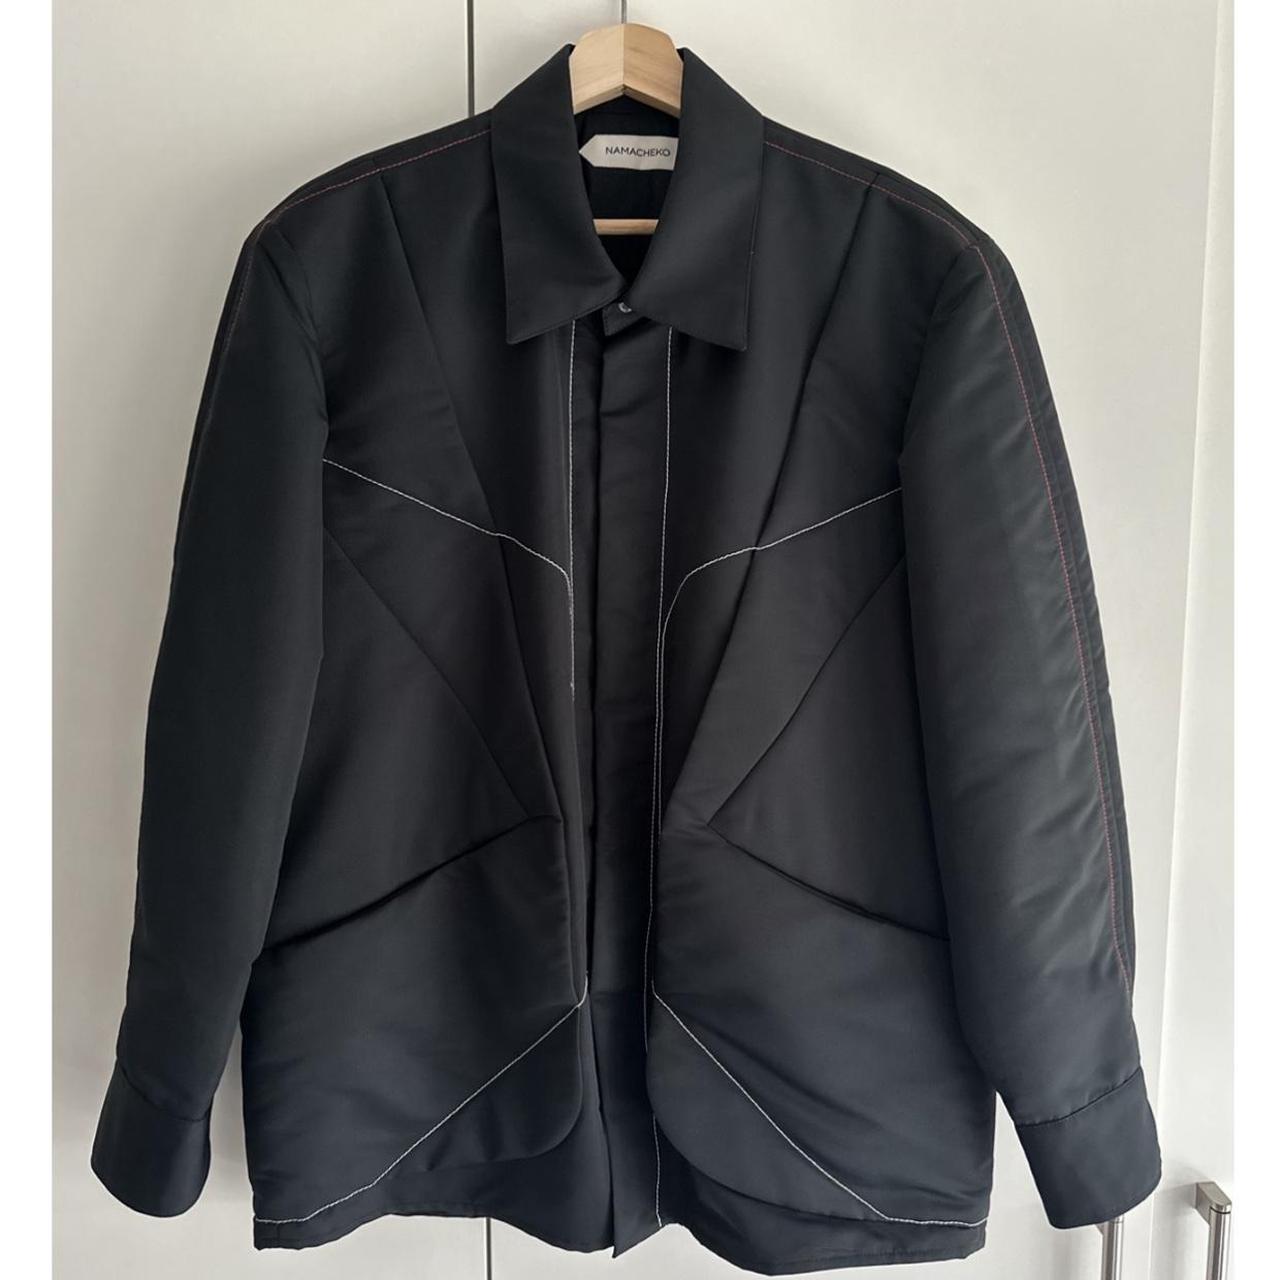 Rare AW19 Namacheko Barane Jacket., Size Medium. Fits